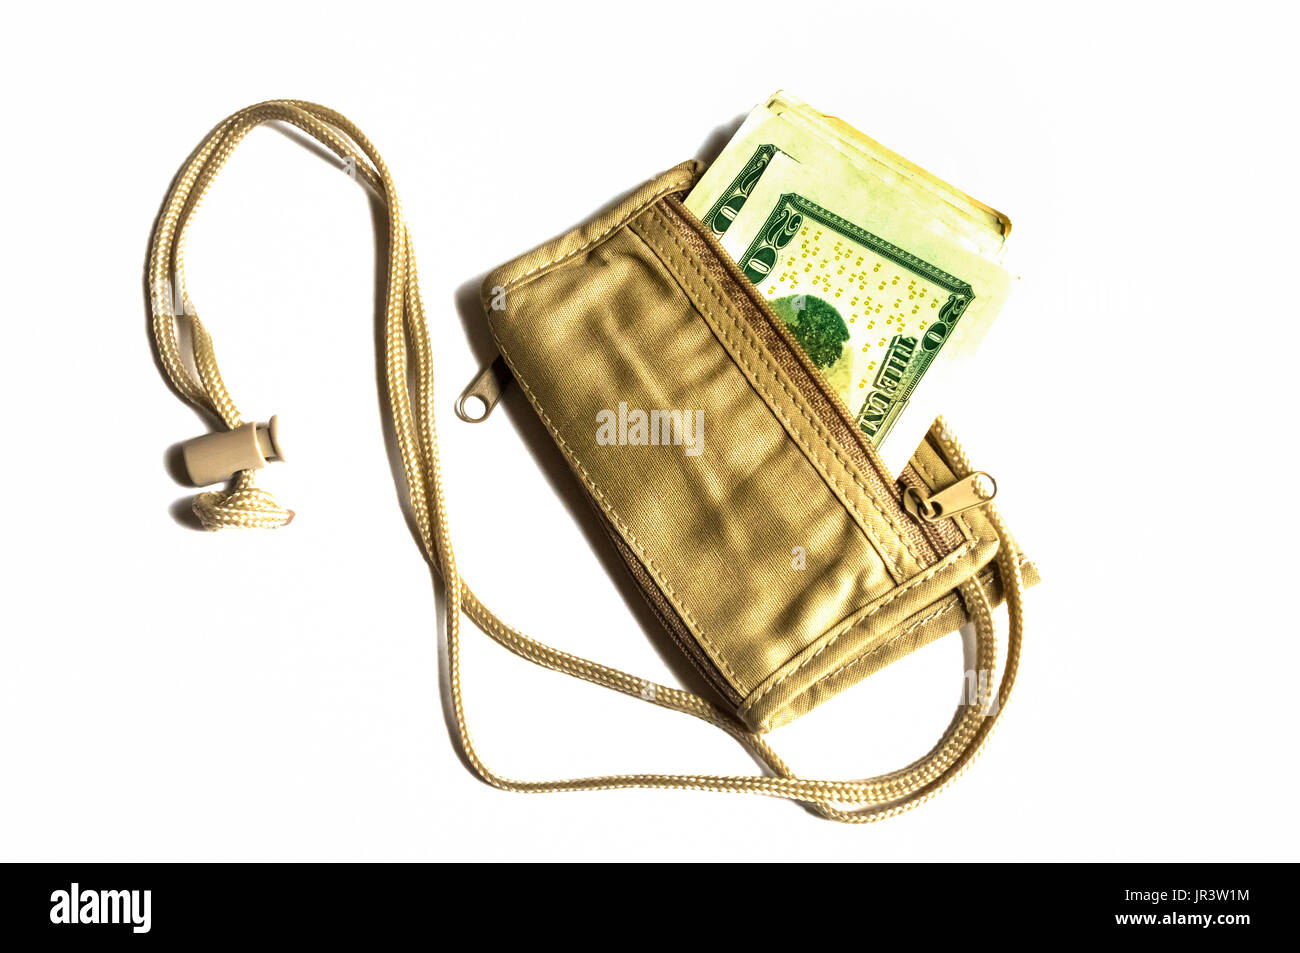 Un bronceado cuello billetera llena de billetes norteamericanos sobre un fondo blanco. Foto de stock